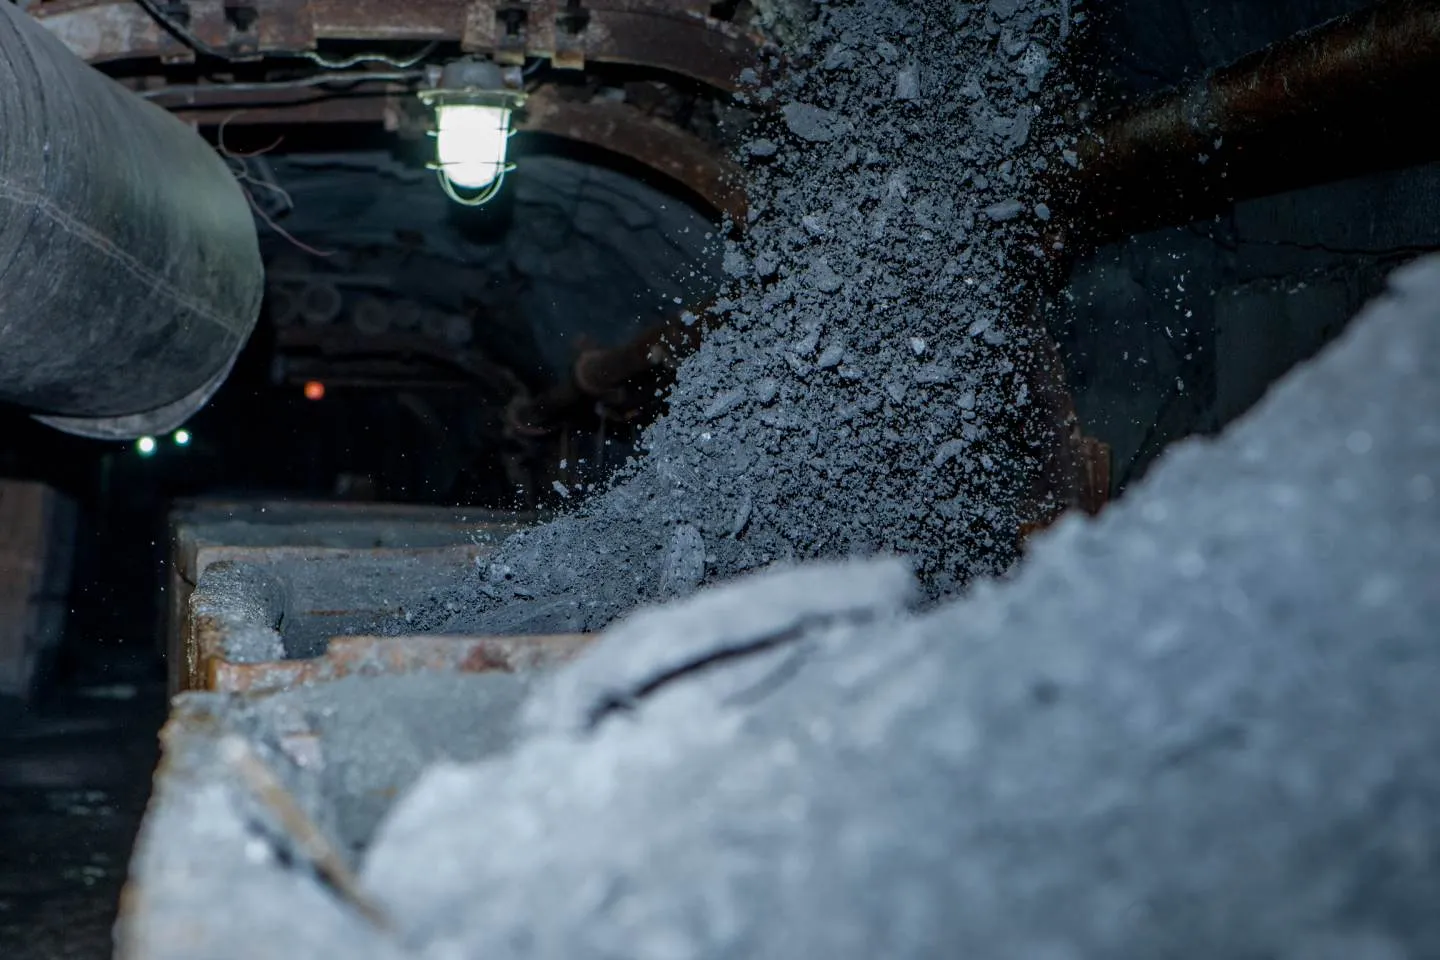 Происшествия в Казахстане и мире / Выброс газа унес жизни четырех человек в шахте "АрселорМиттал Темиртау"